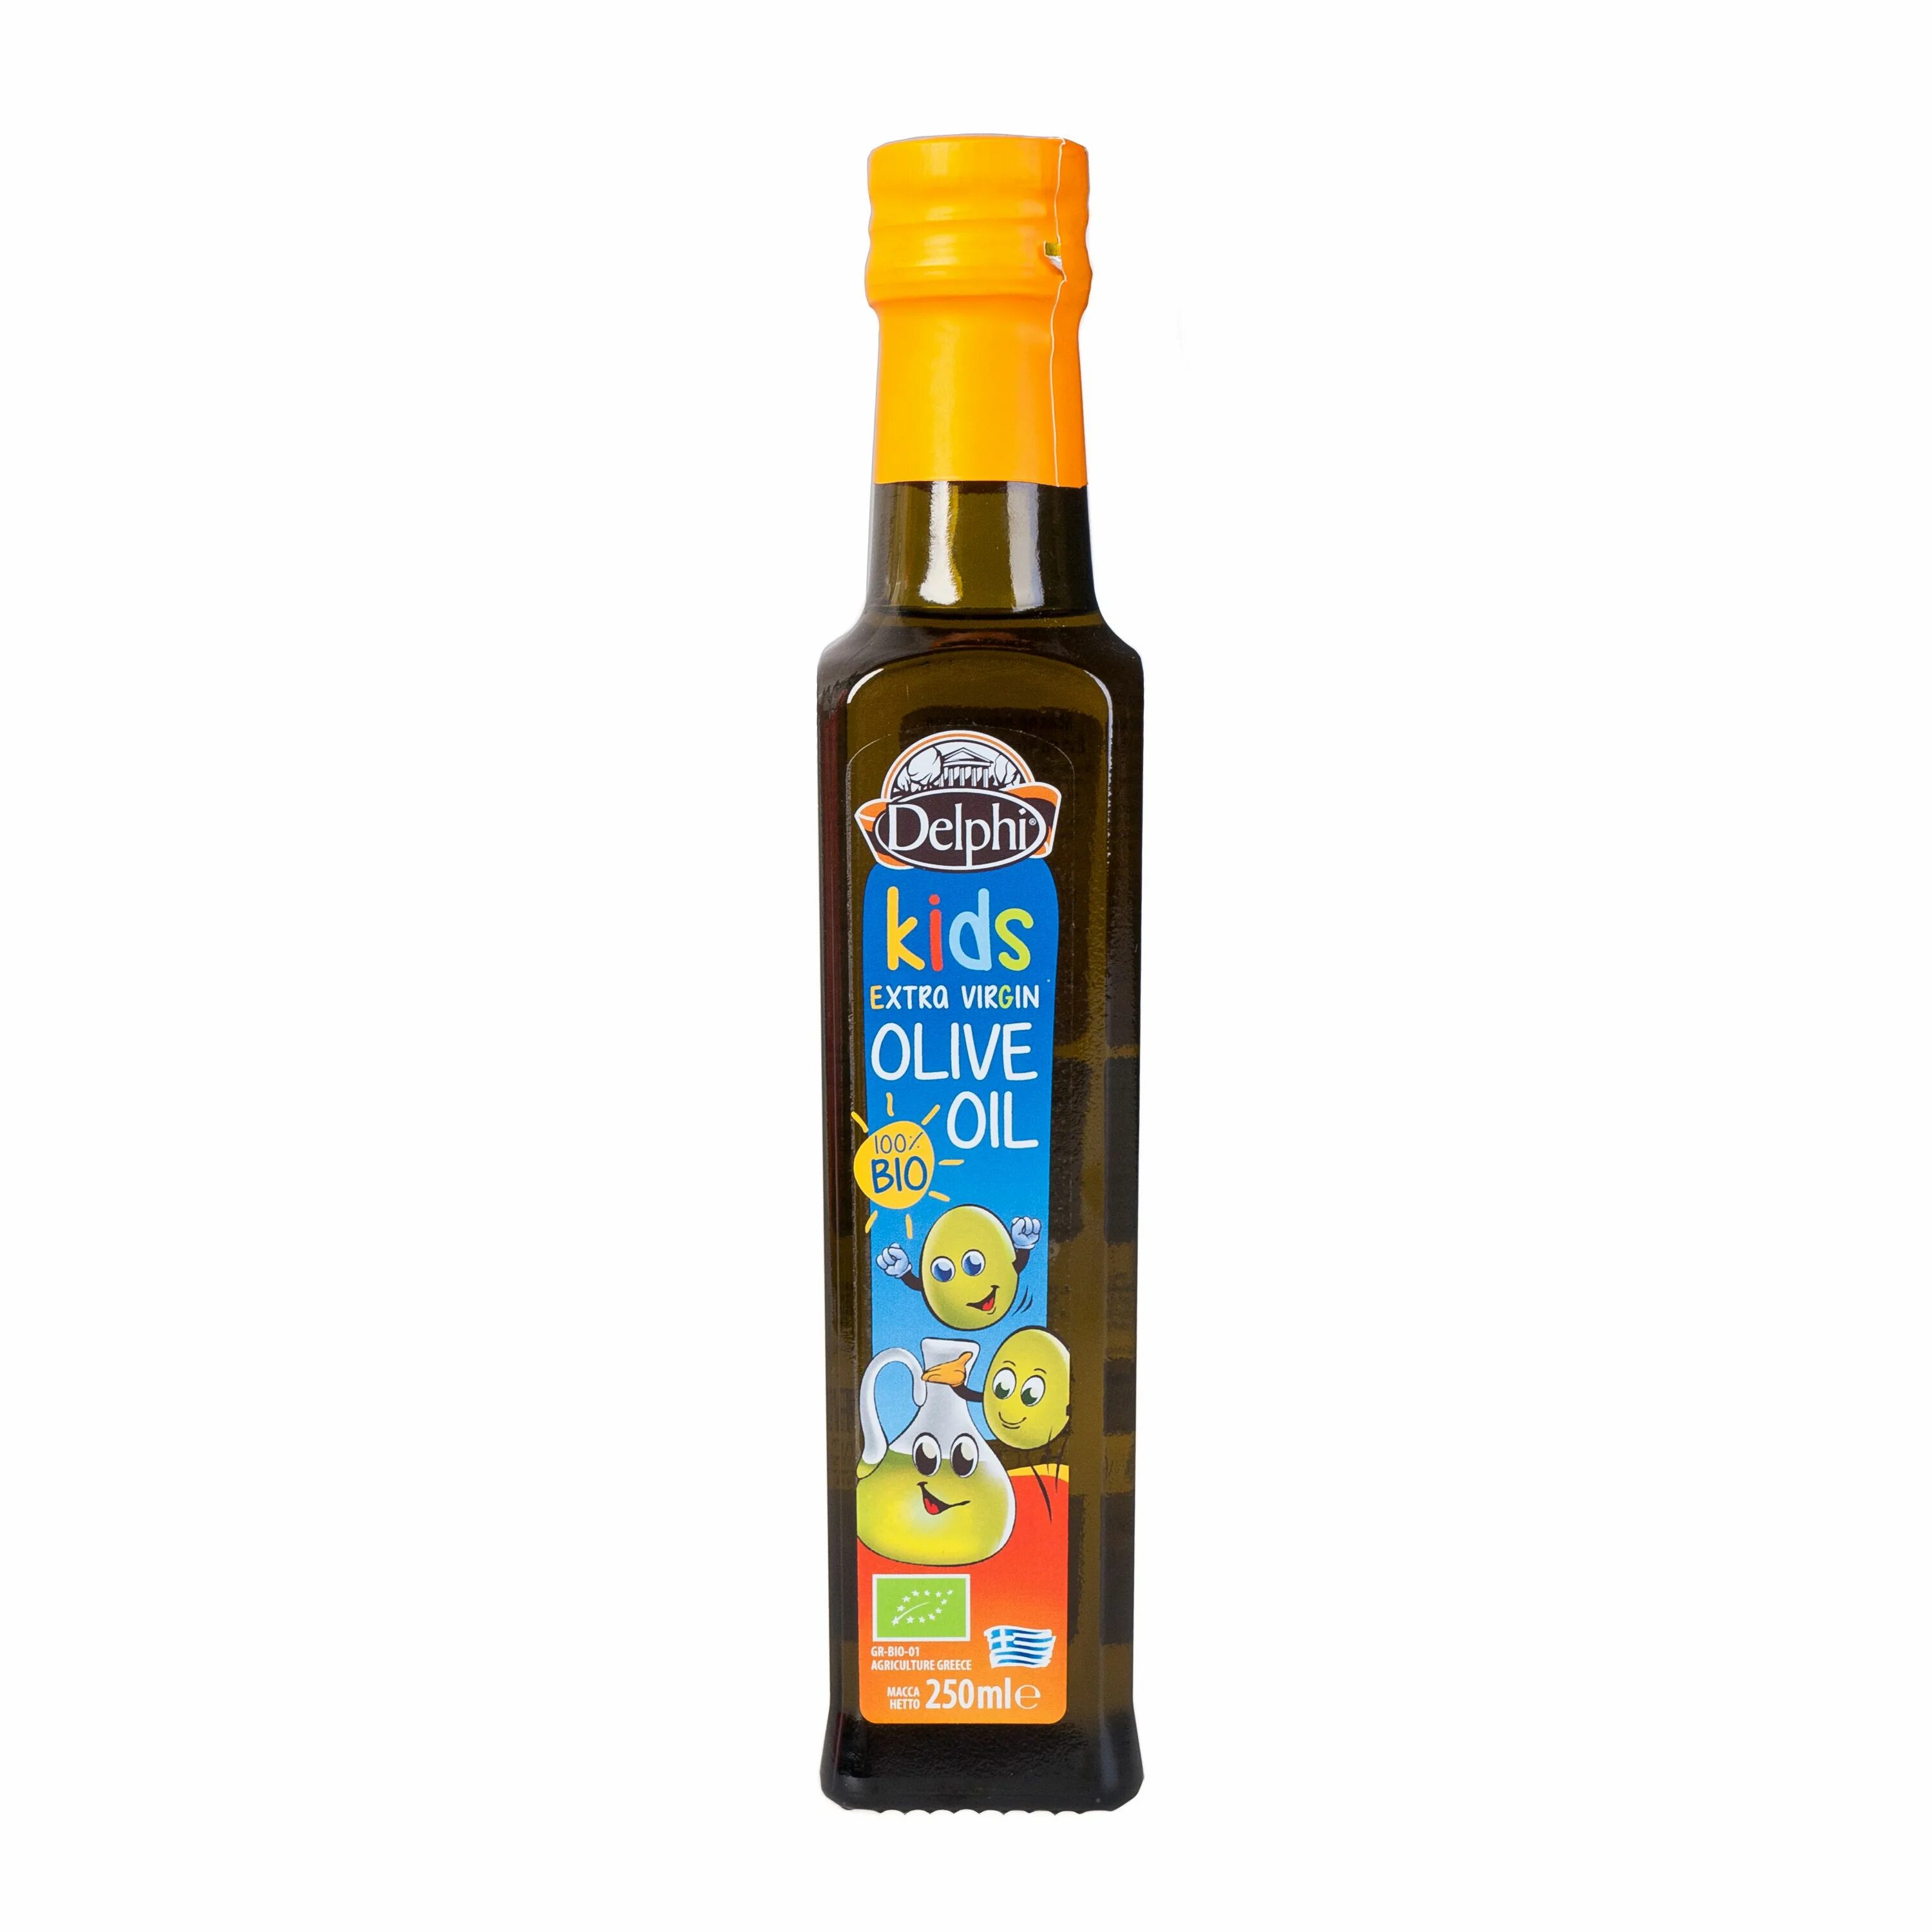 Масло оливковое e.v. био Kids DELPHI 0,25 Л. Масло оливковое Extra Virgin Olive Oil DELPHI 0,25л. Масло оливковое DELPHI С Крита ст/б 250мл. DELPHI масло оливковое Extra Virgin нерафинированное.